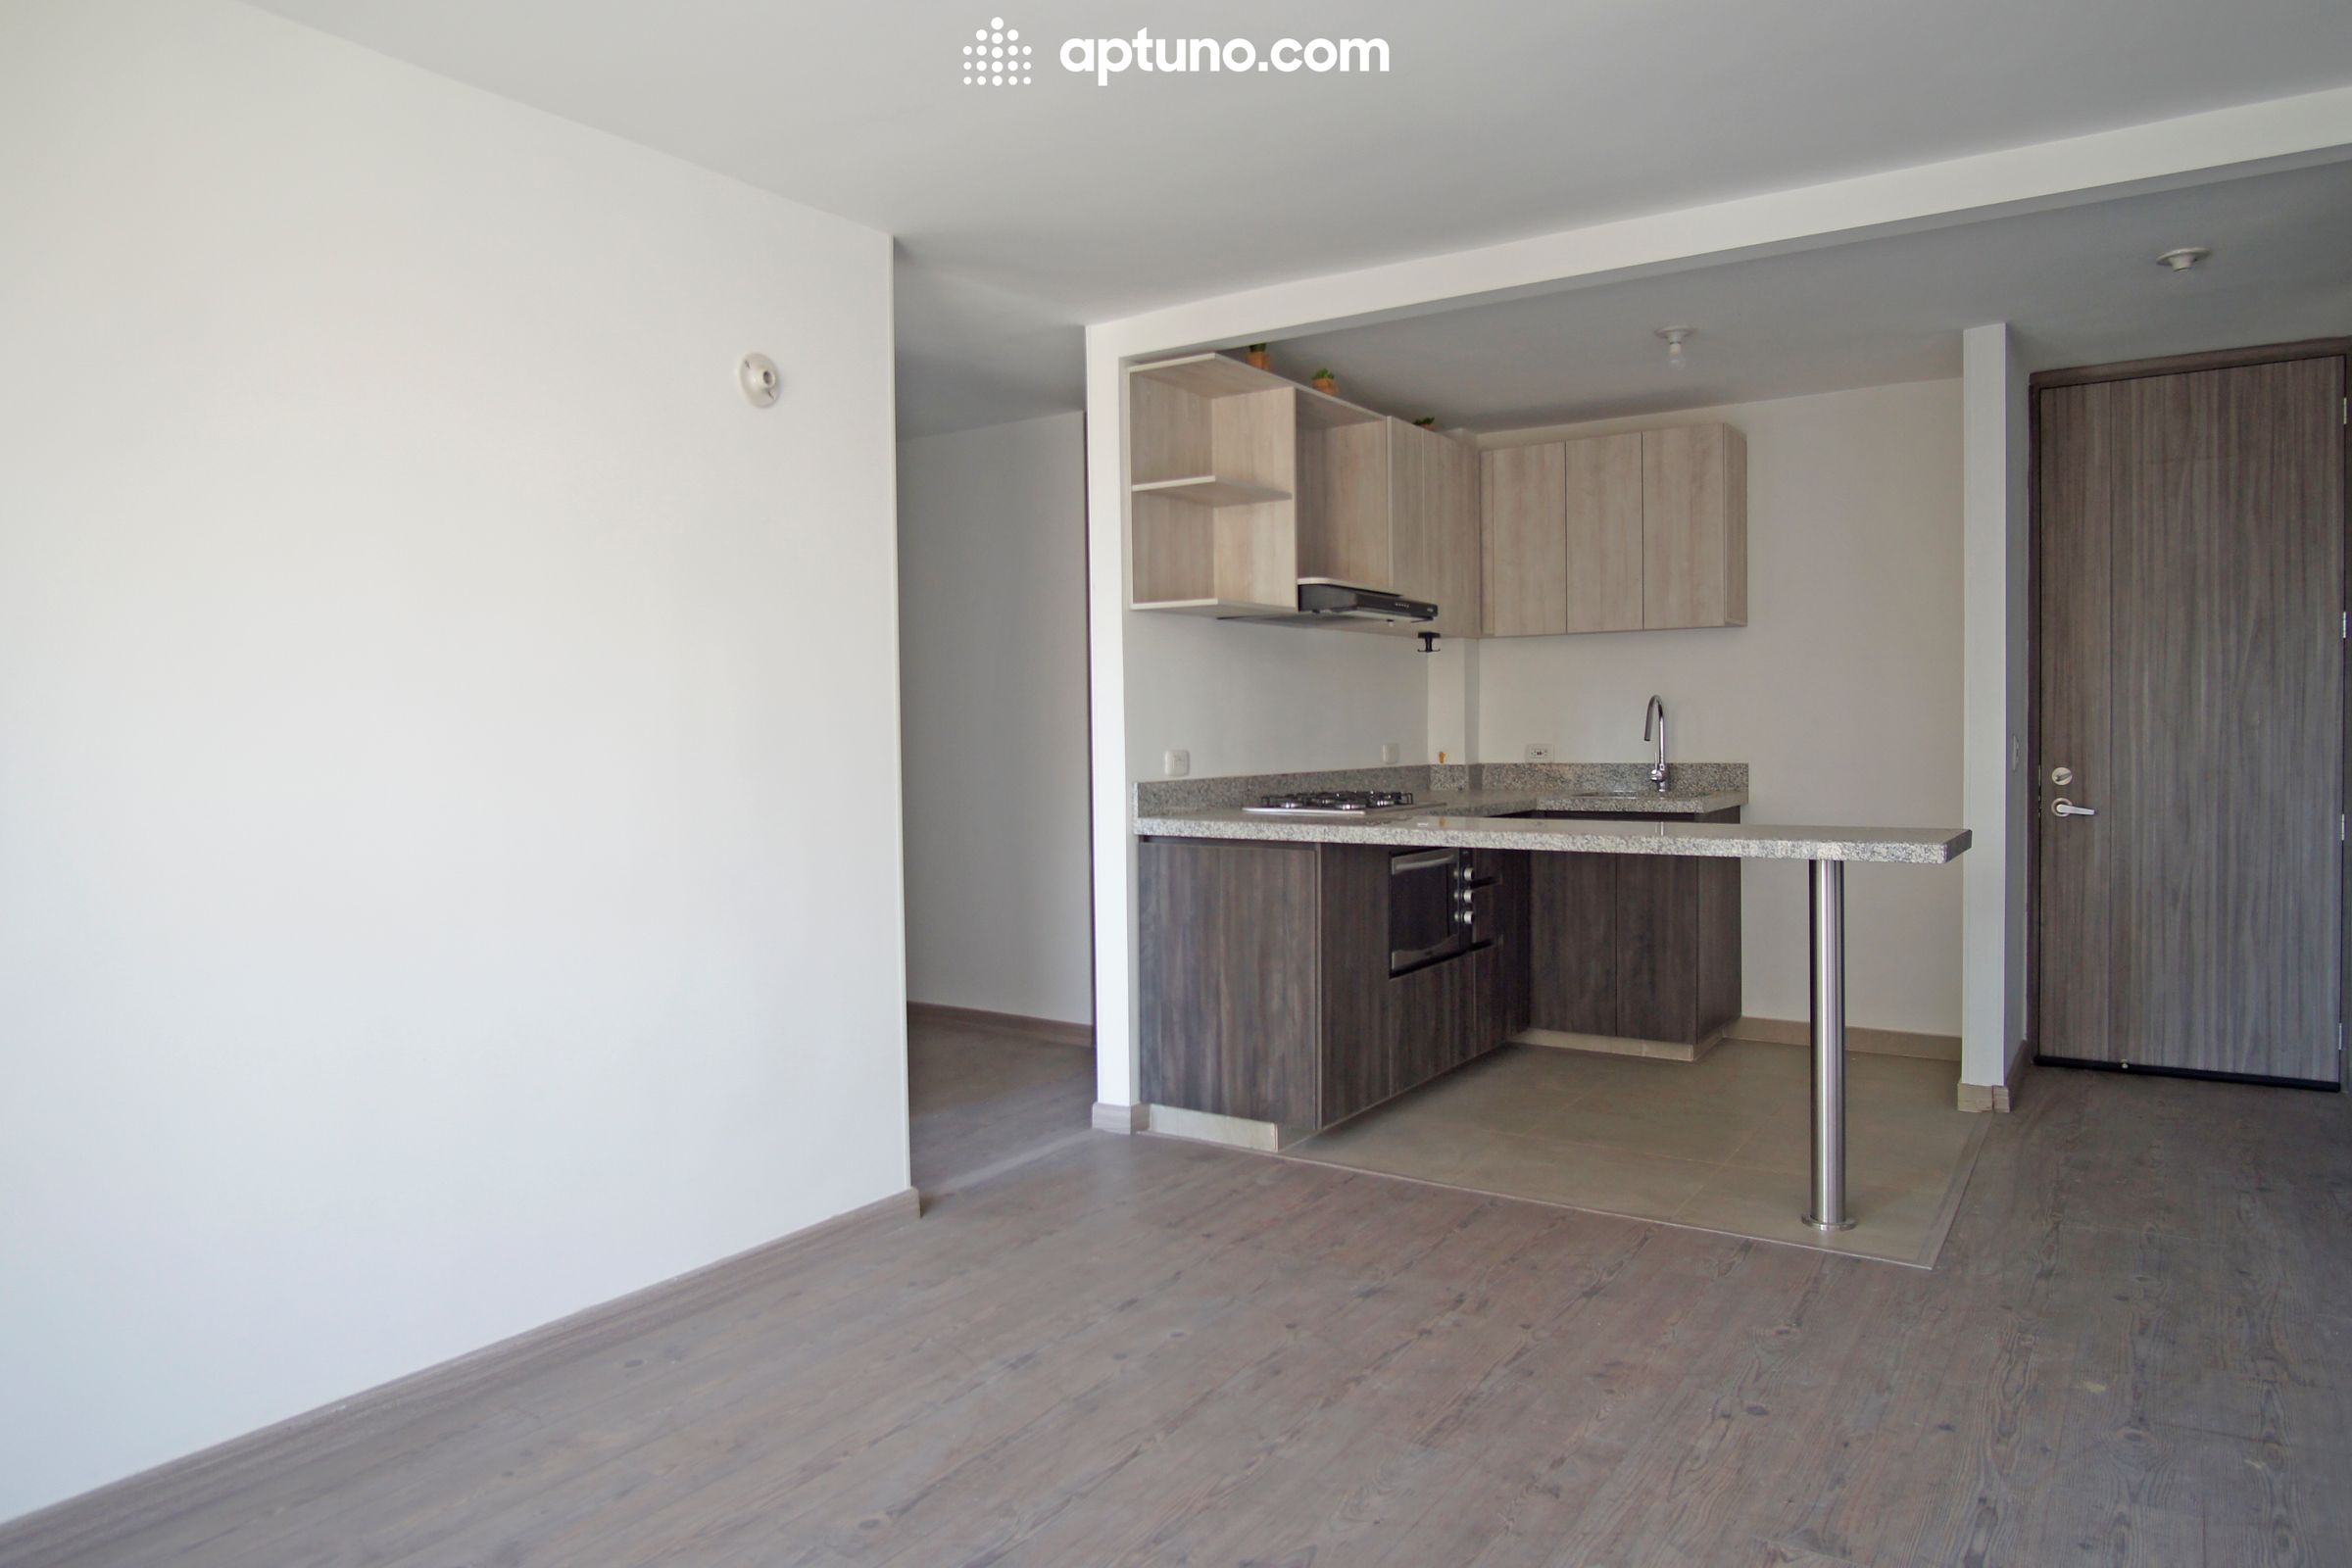 Apartamento en arriendo Zipaquirá 68 m² - $ 1.350.000,00